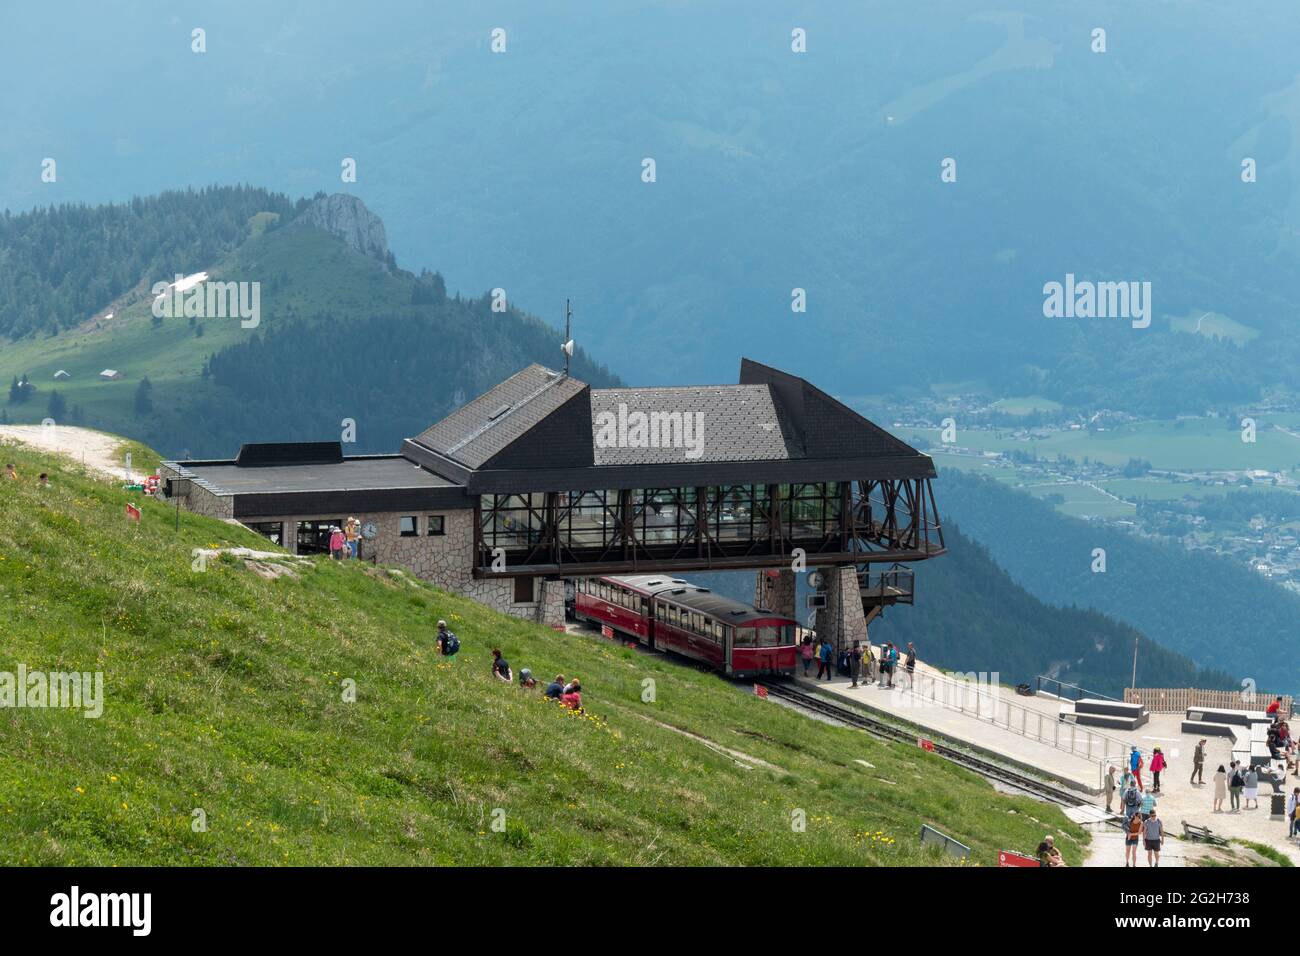 Schafbergbahn mountain station, Schafberg, Salzburg State, Austria Stock Photo